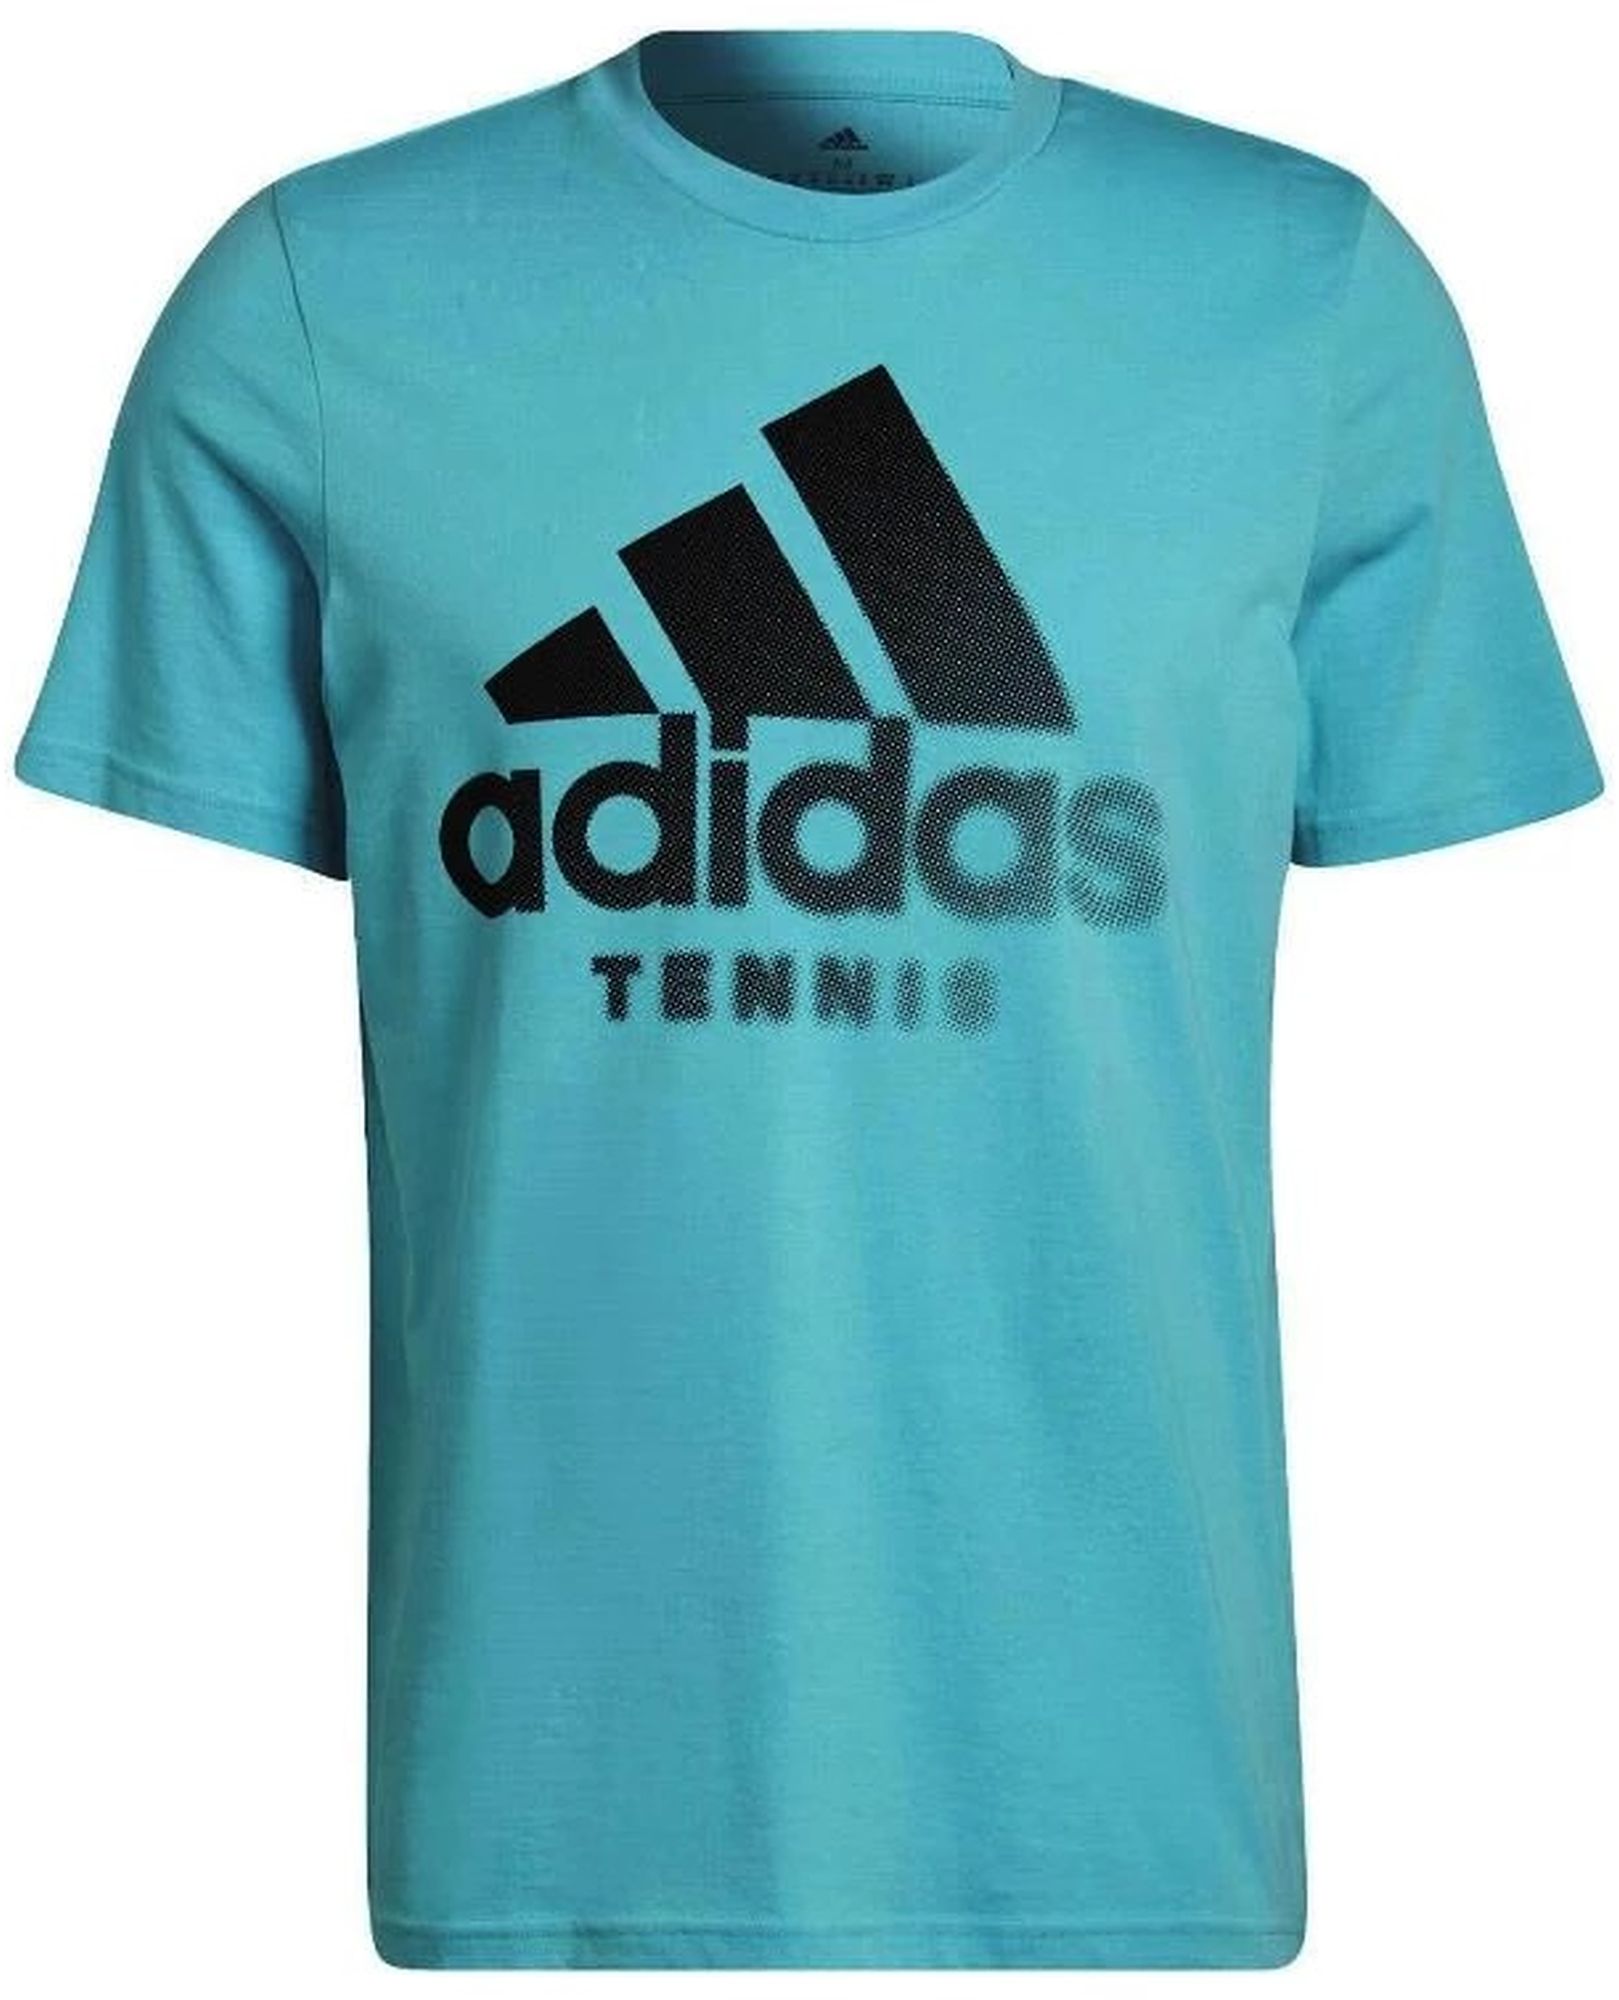 Adidas Tennis Category Graphic Tee (Aqua)